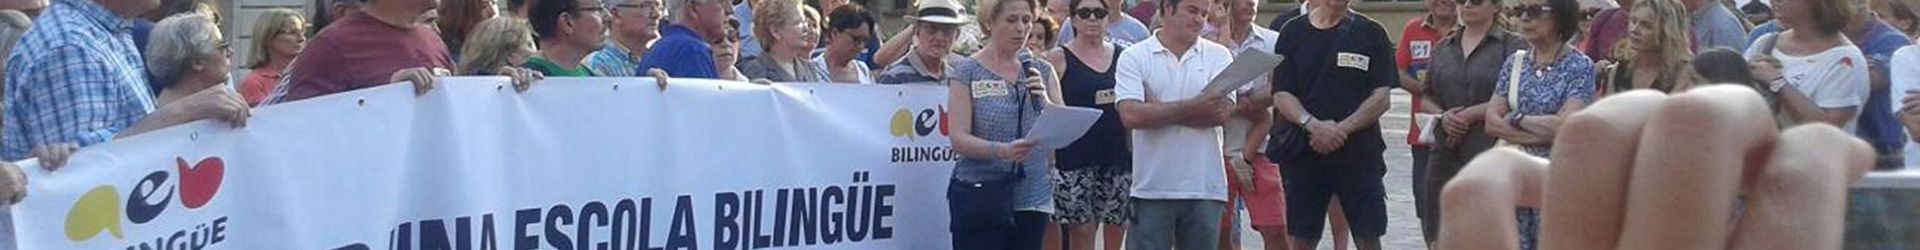 Promovem i difonem els avantatges del bilingüisme i del trilingüisme en la societat